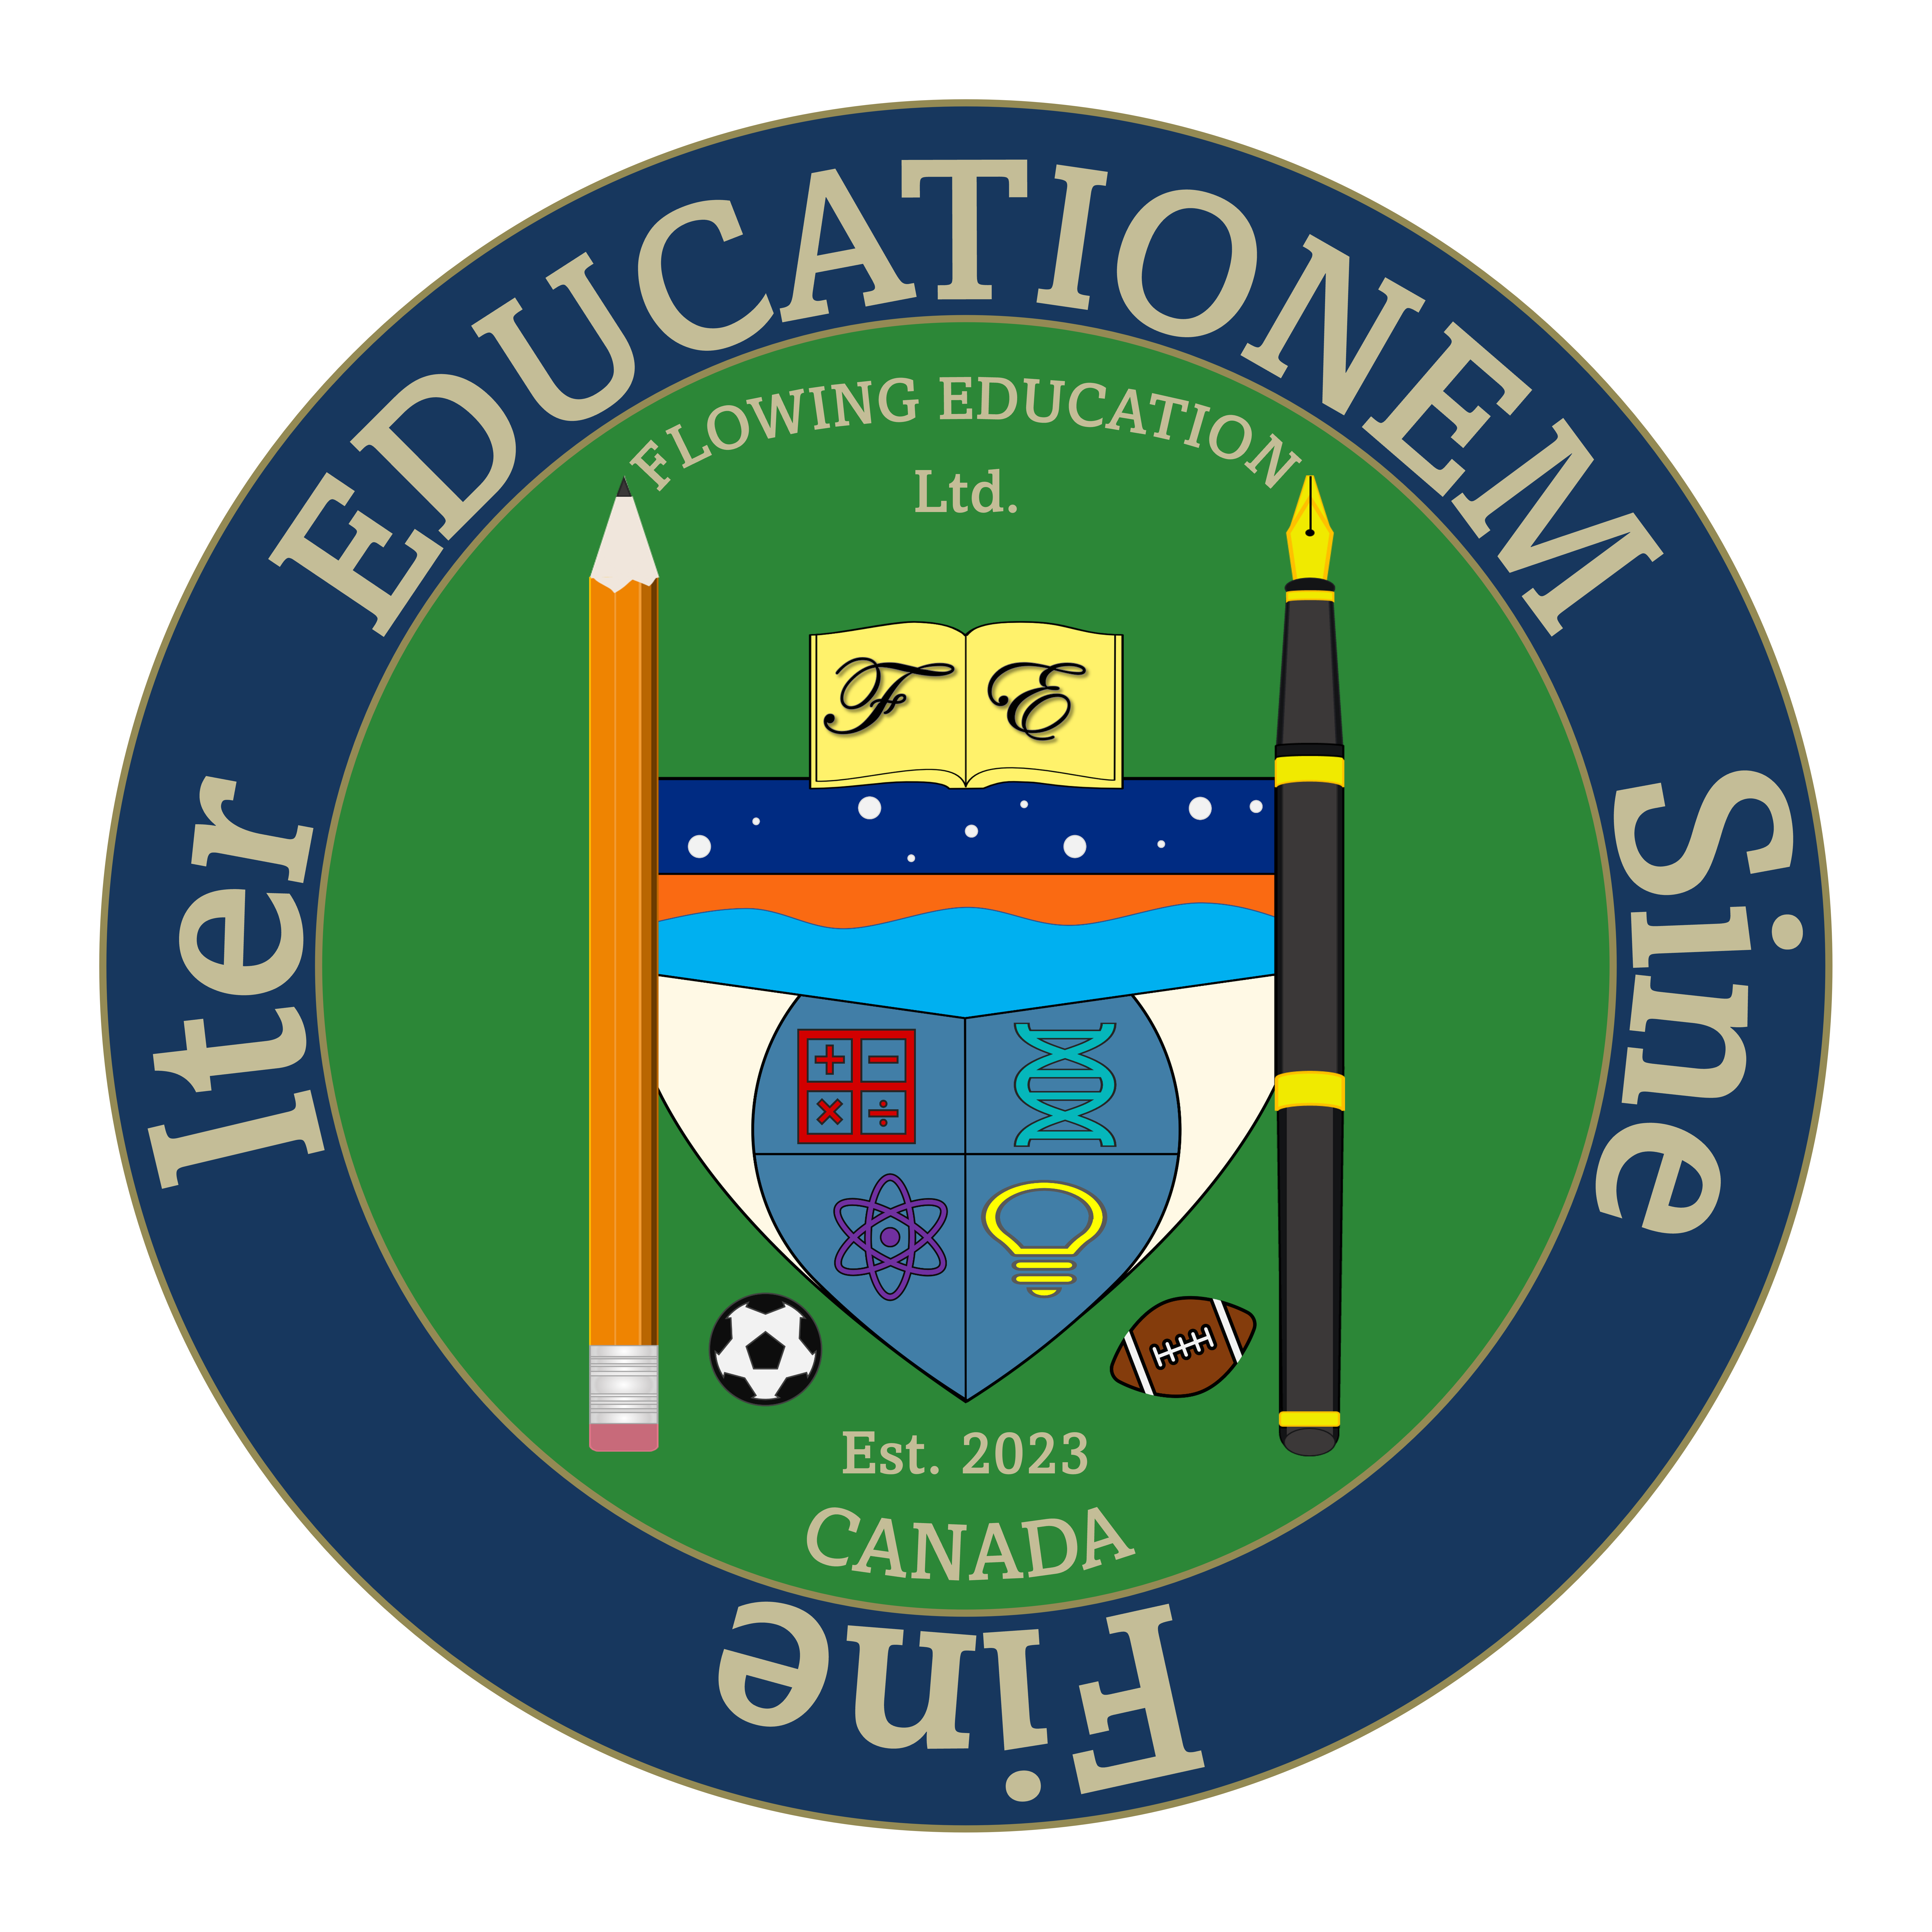 Flowing Education Ltd logo